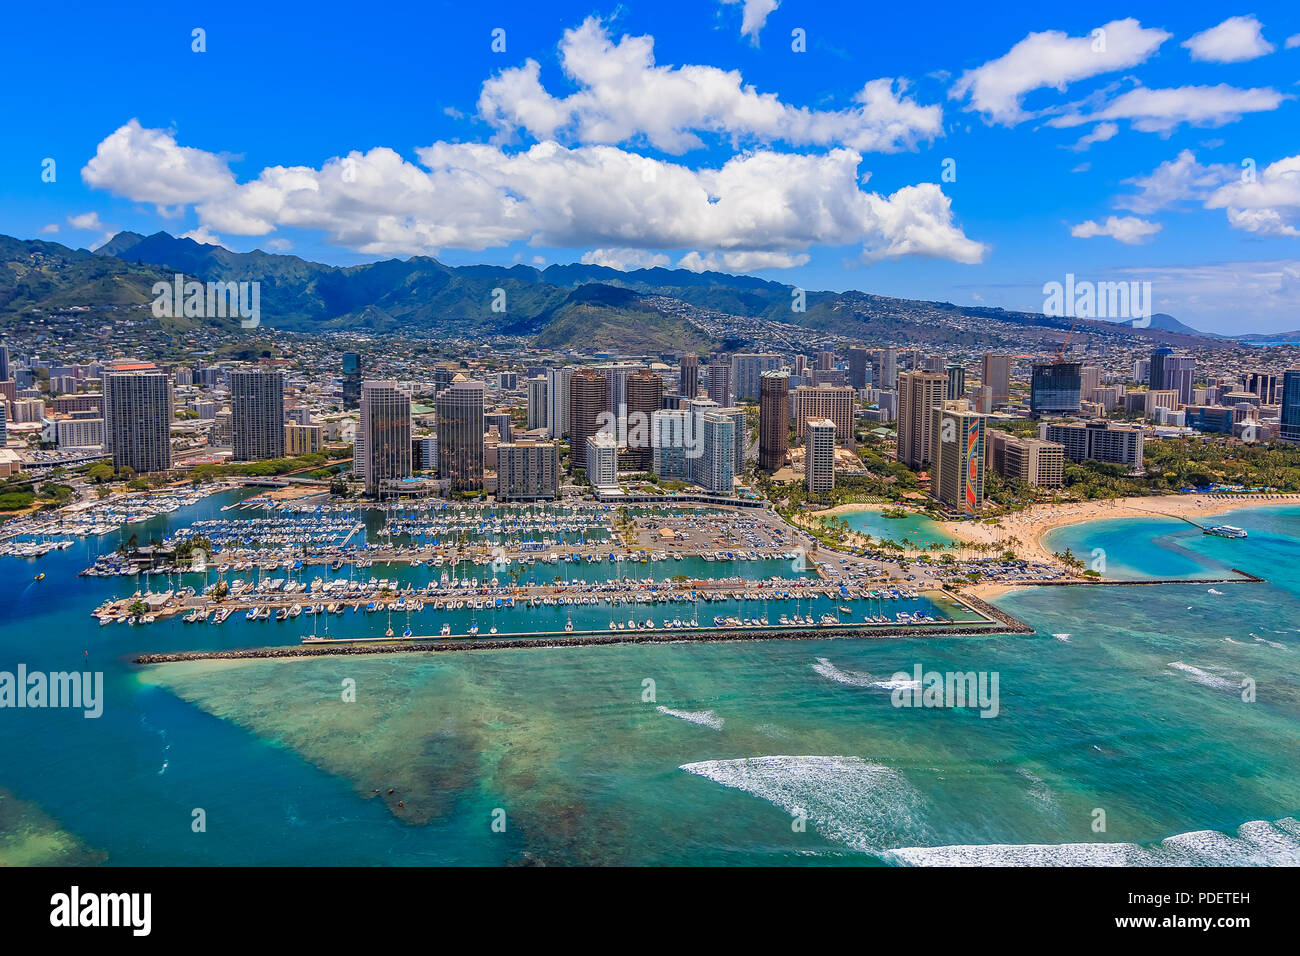 Vue aérienne de la plage de Waikiki à Honolulu, Hawaii d'un hélicoptère Banque D'Images